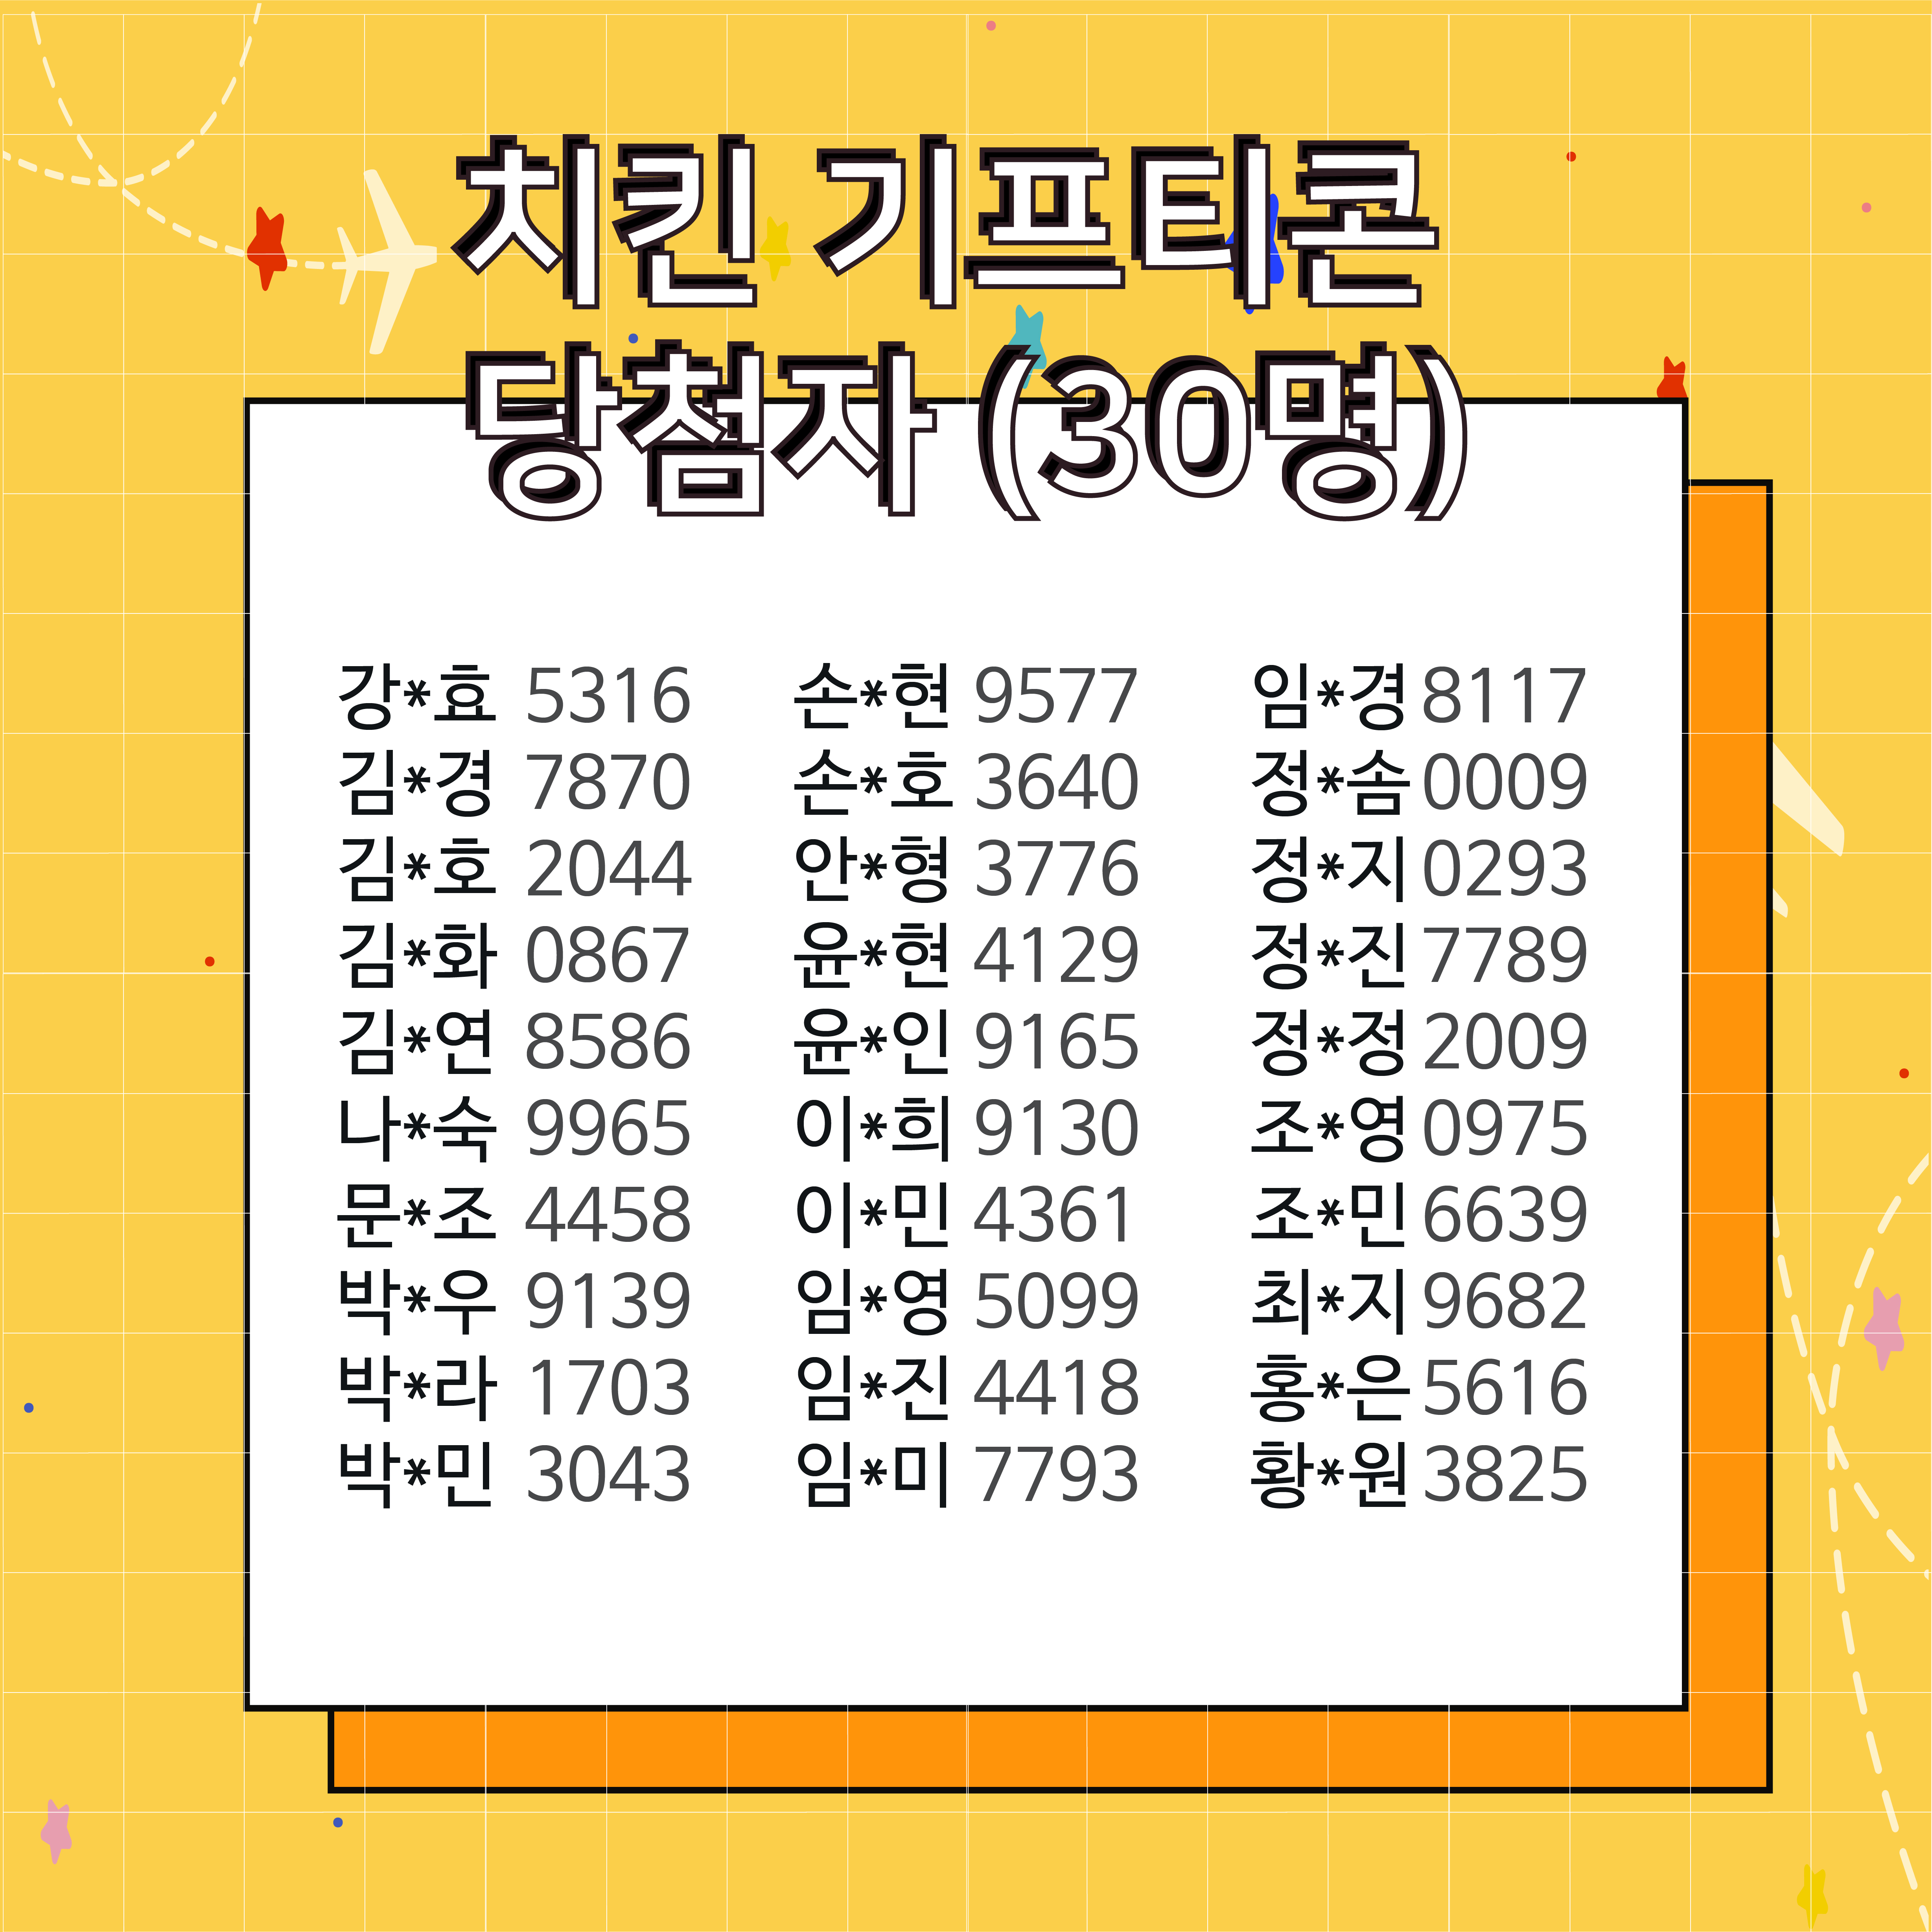 [부산-거제-통영-남해] 4권역 여행코스 역제안 이벤트 당첨자 발표